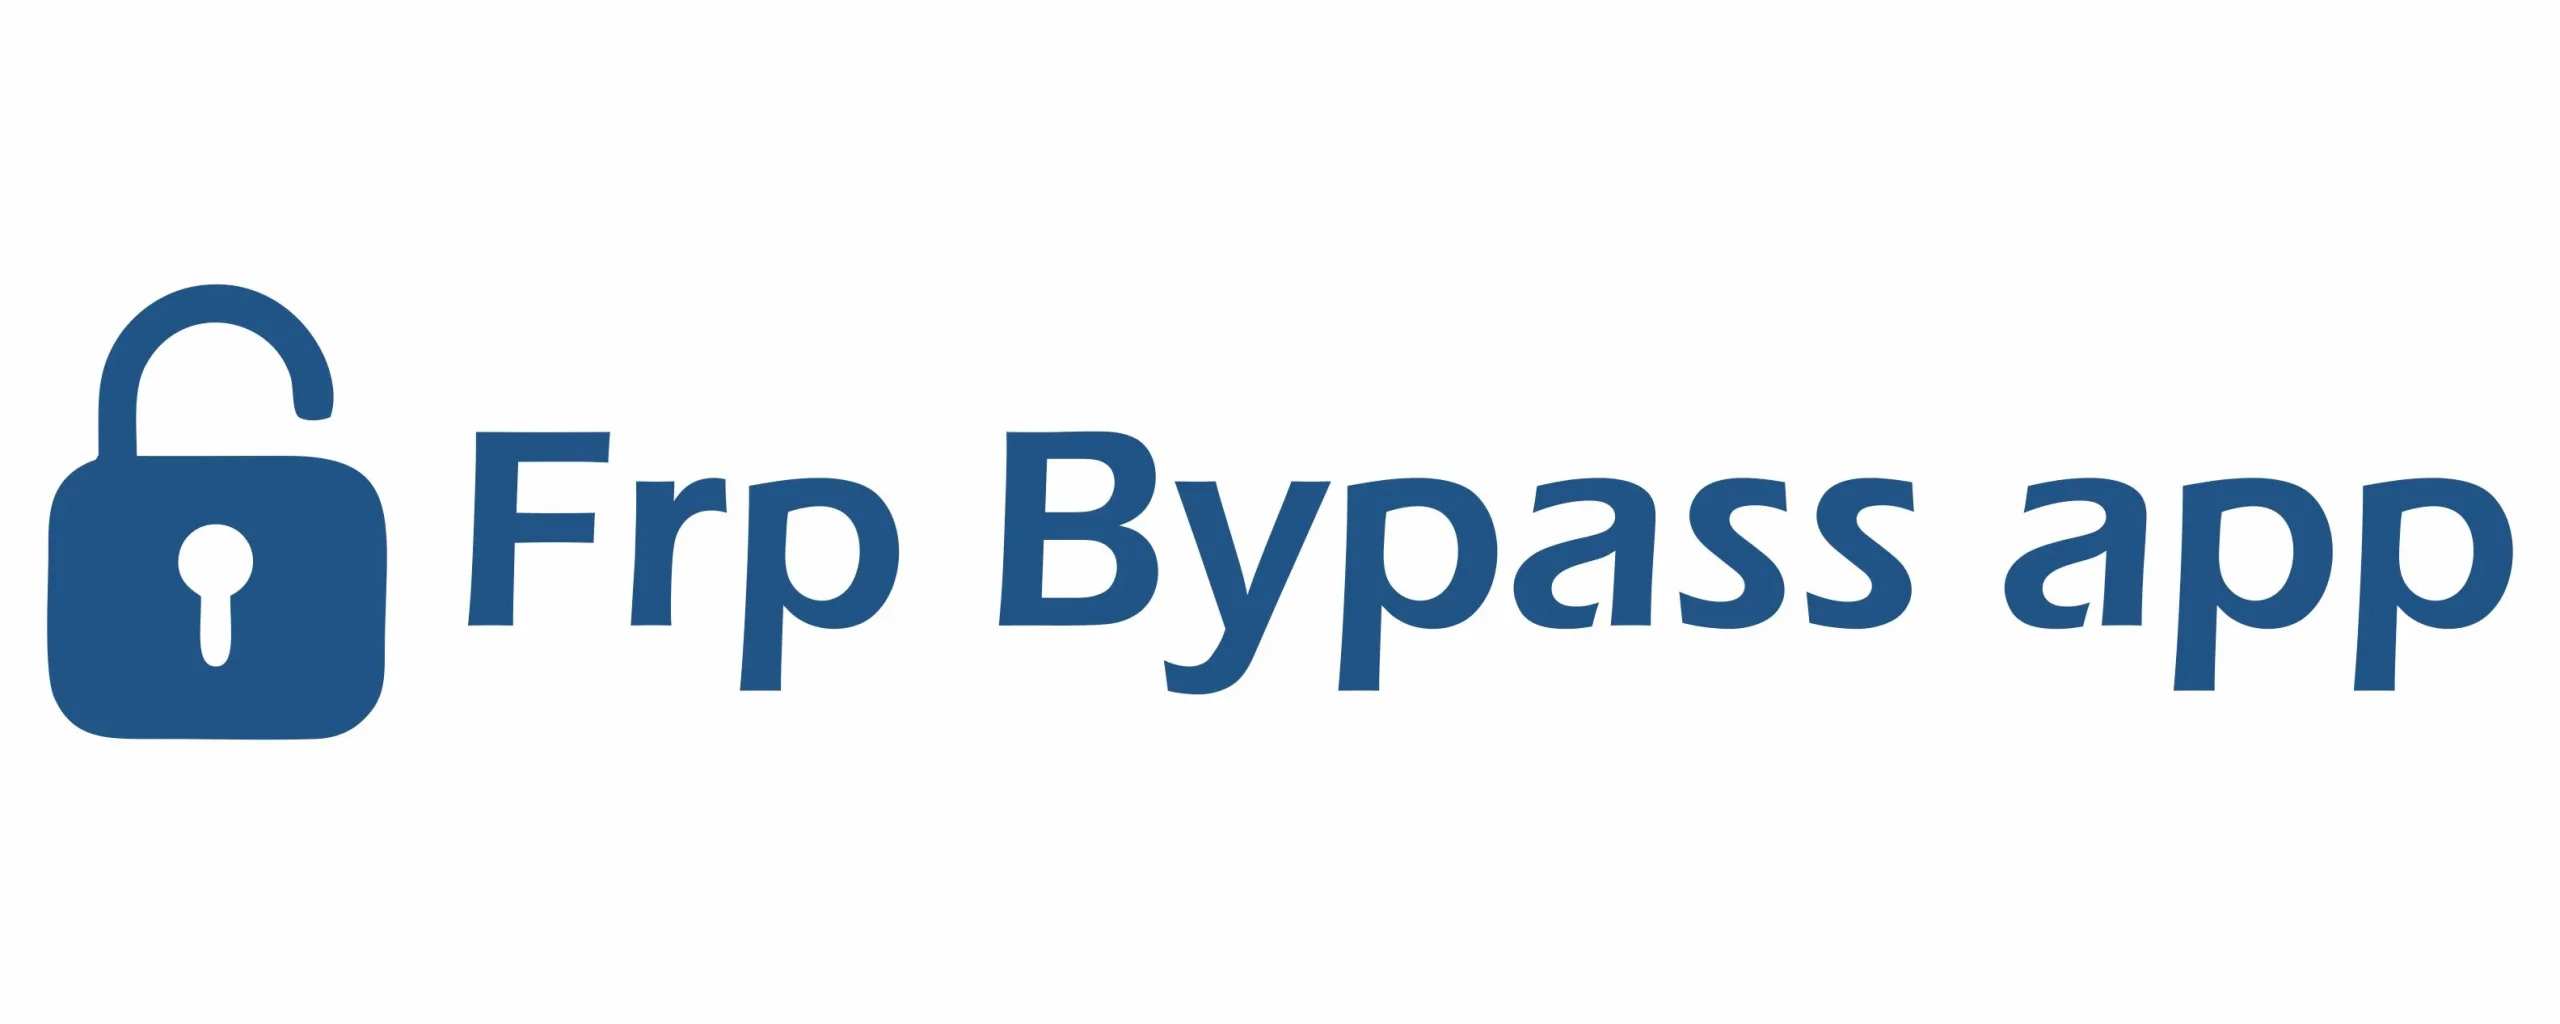 frp bypass apk logo